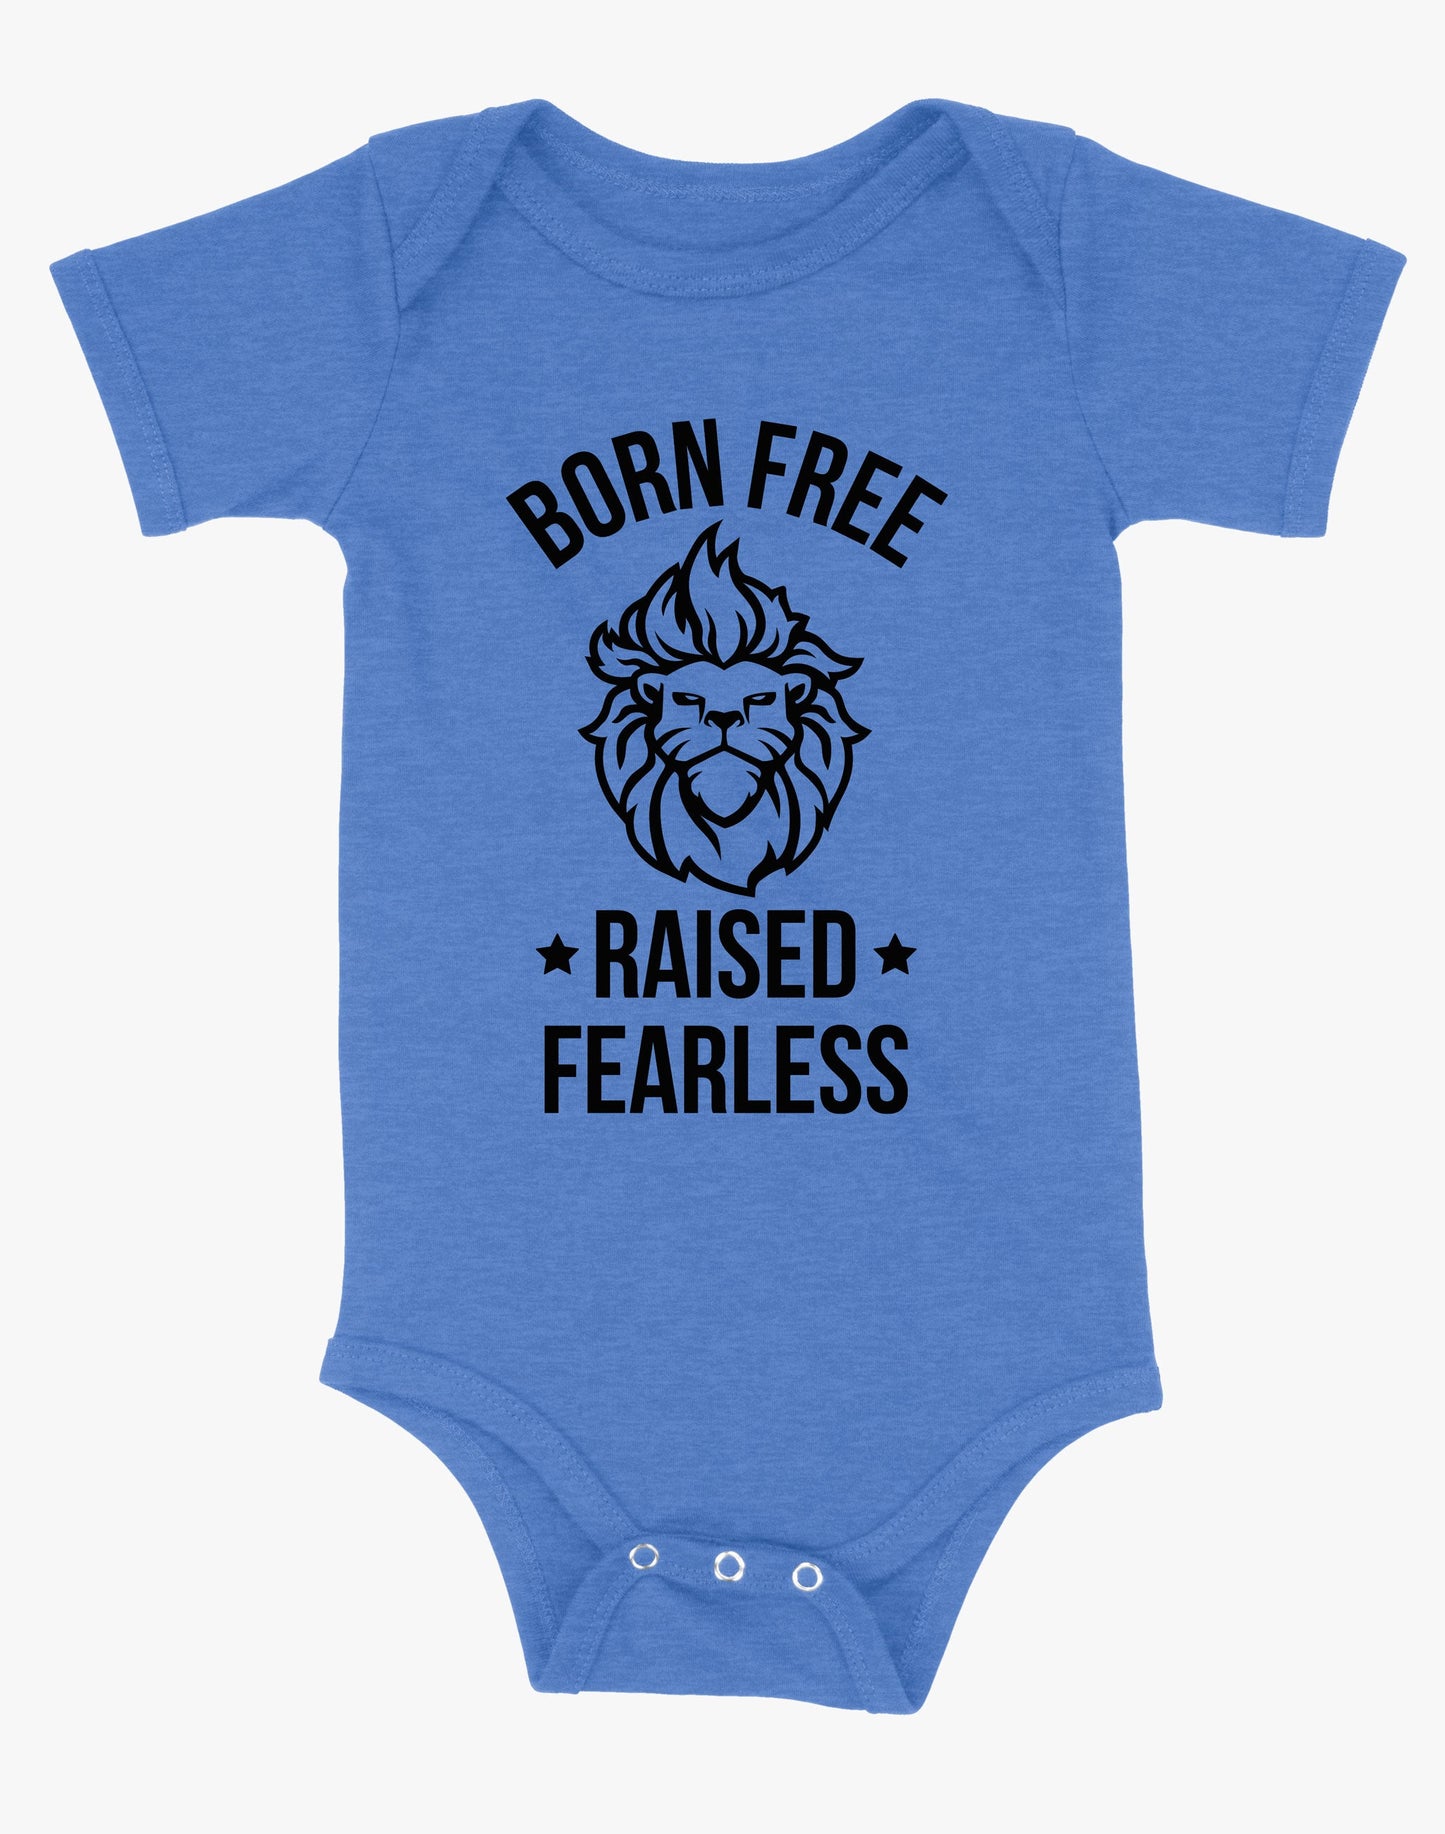 Baby Born Free Raised Fearless Onsie - Blue